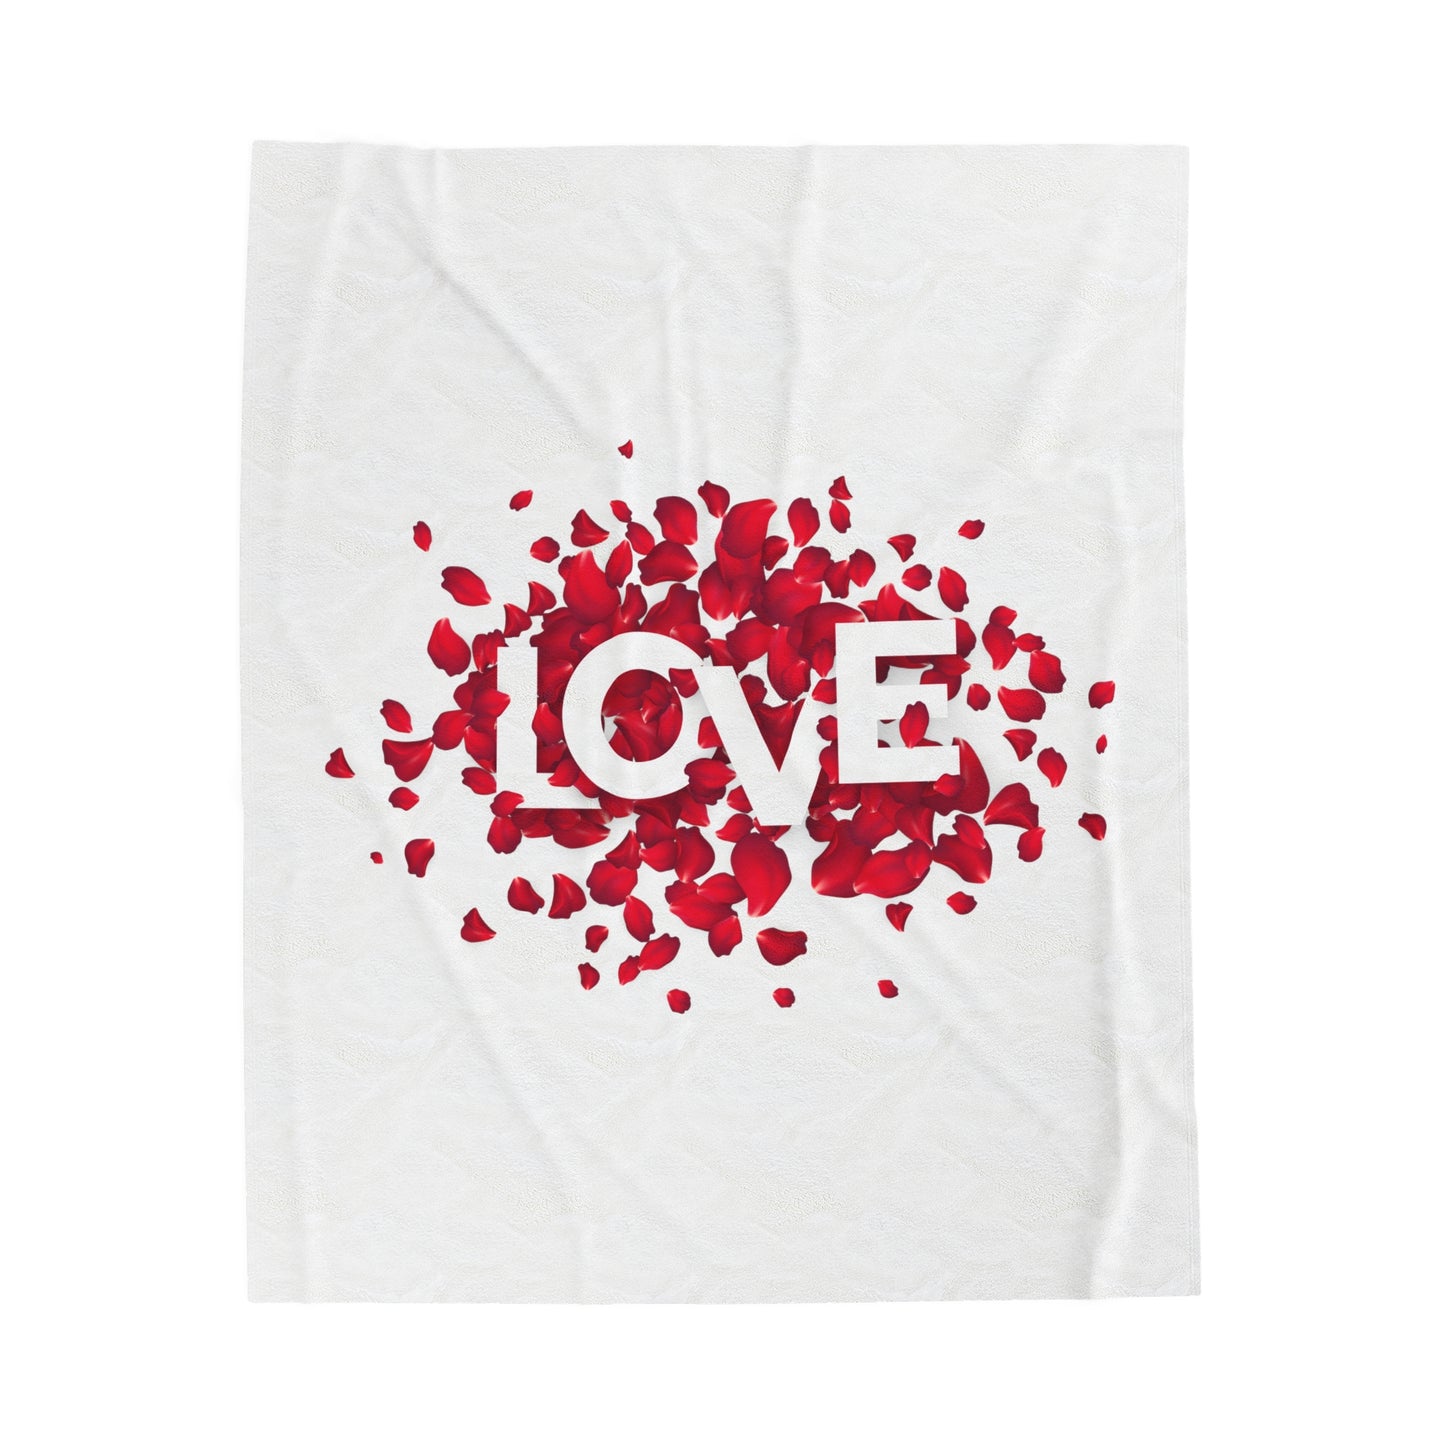 Love with Flowers Printed Velveteen Plush Blanket